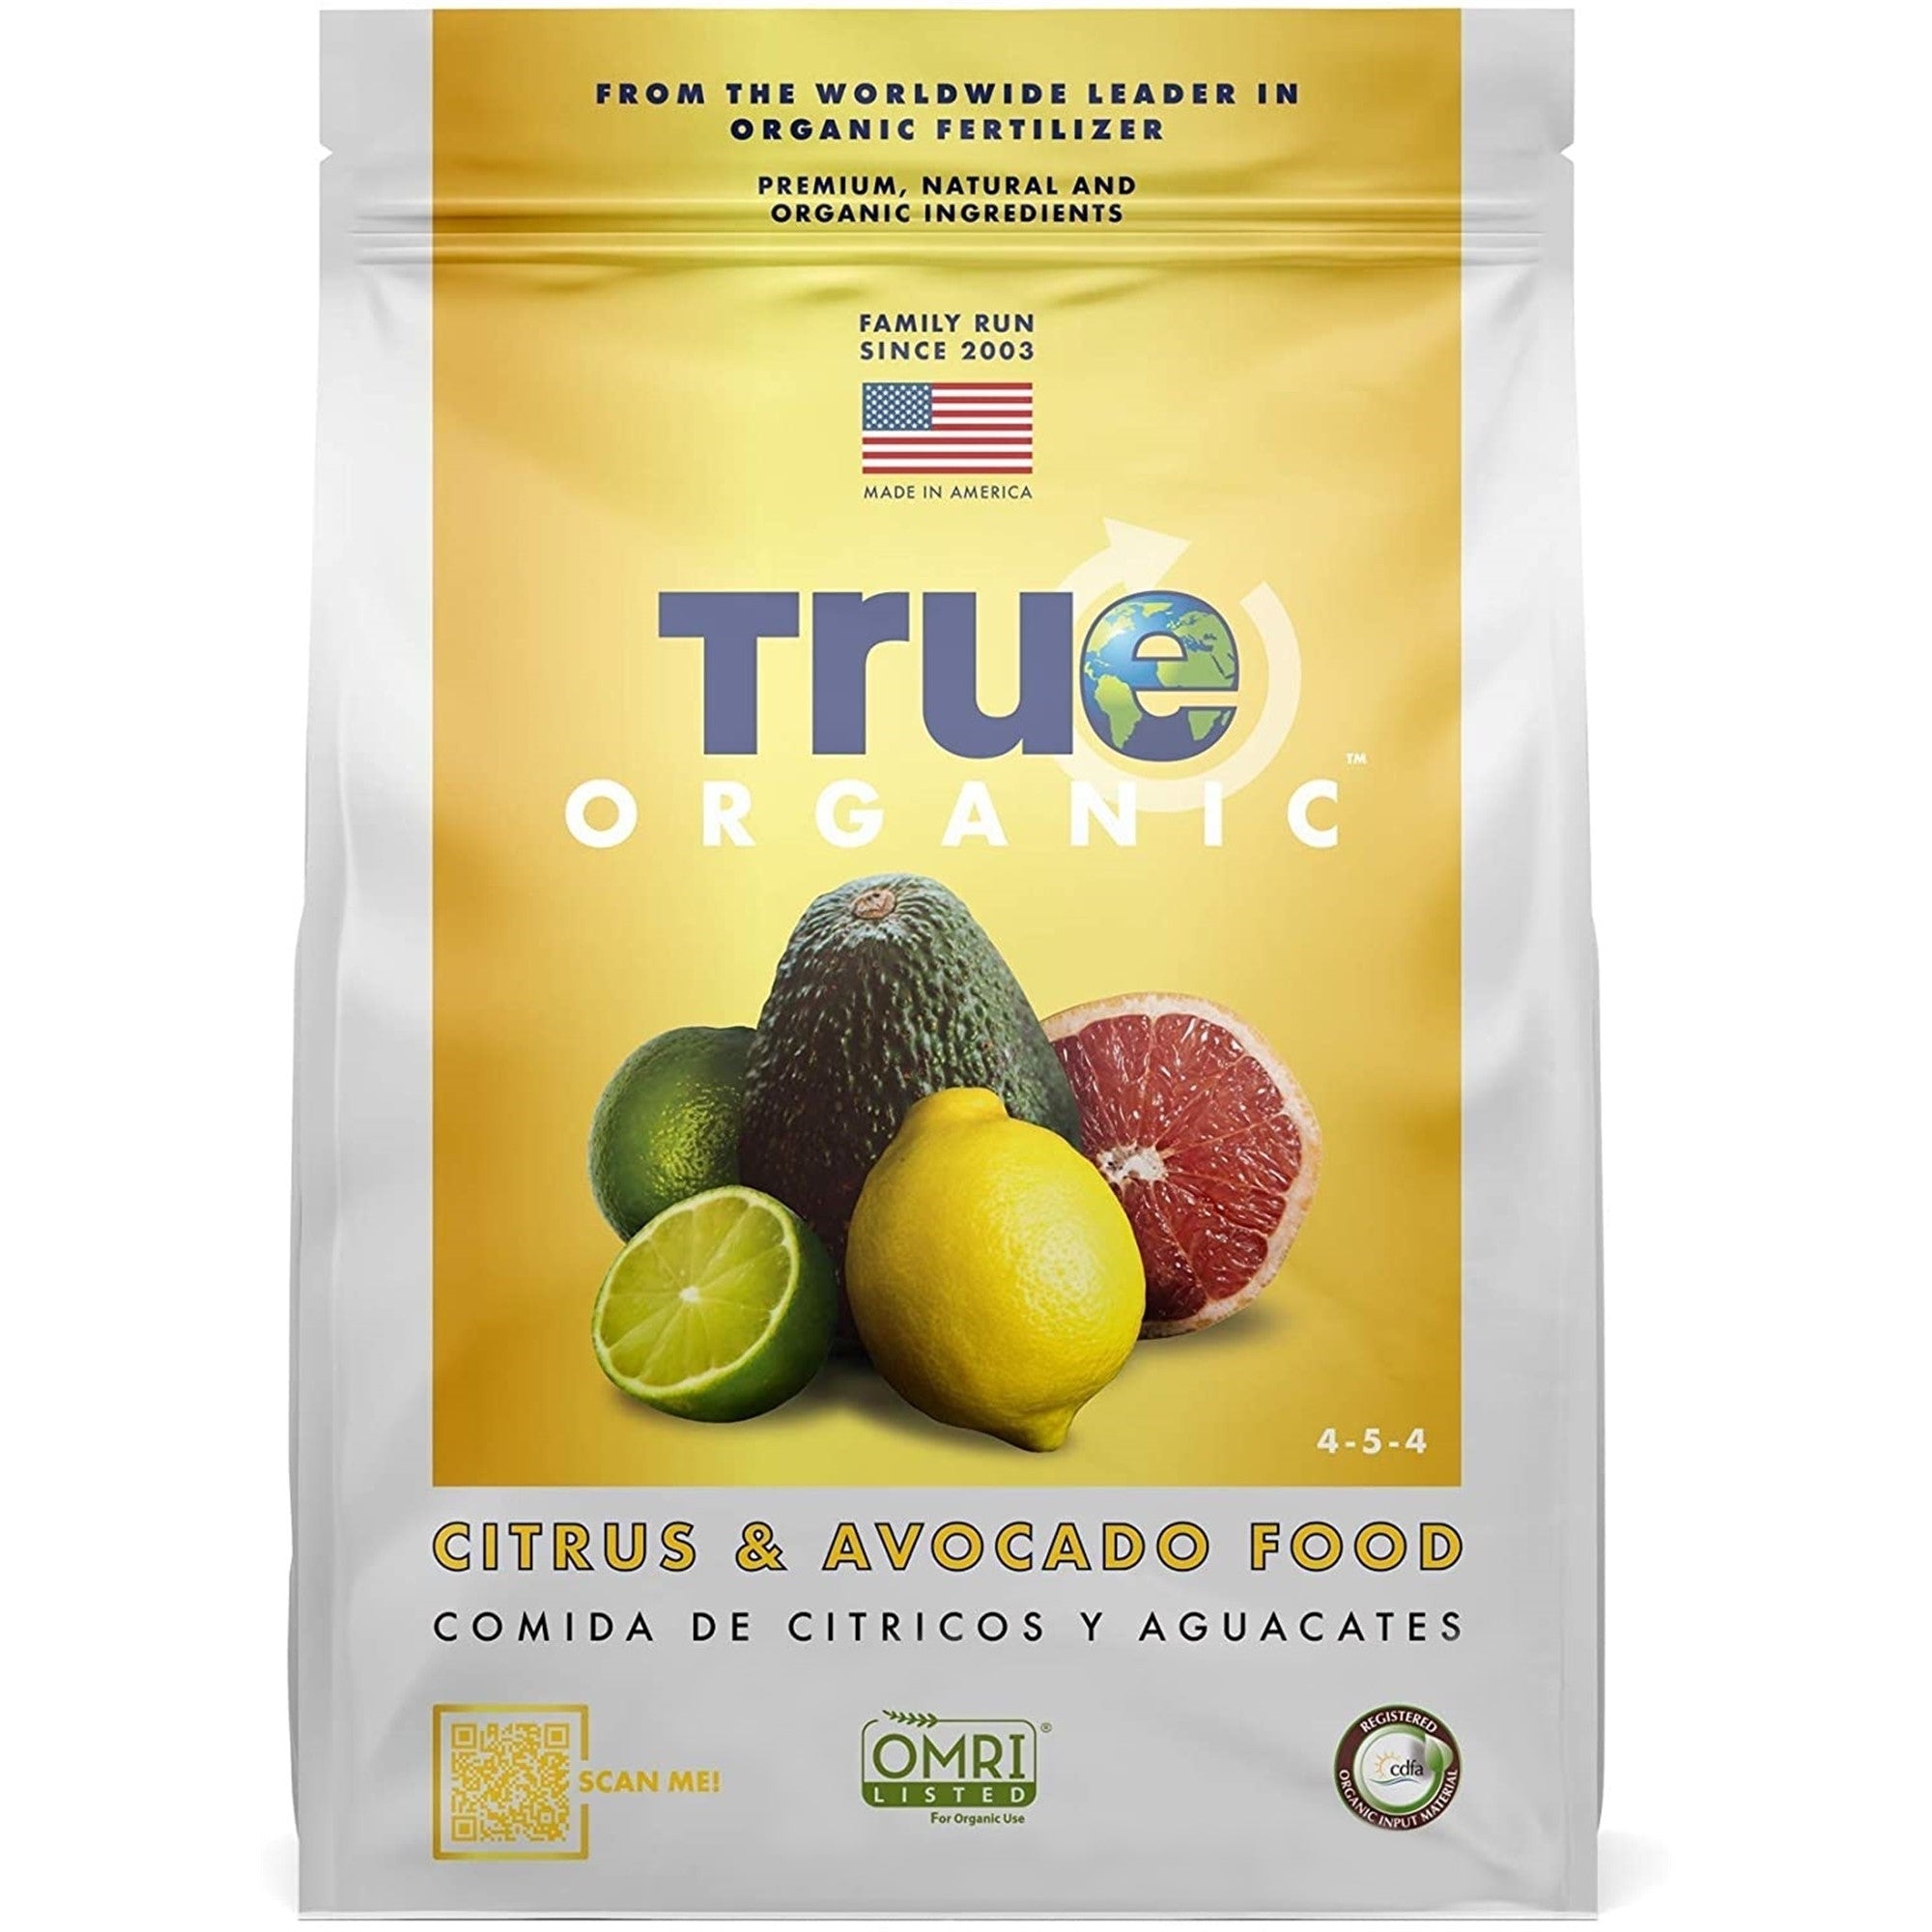 True Organic Granular Citrus & Avocado Food